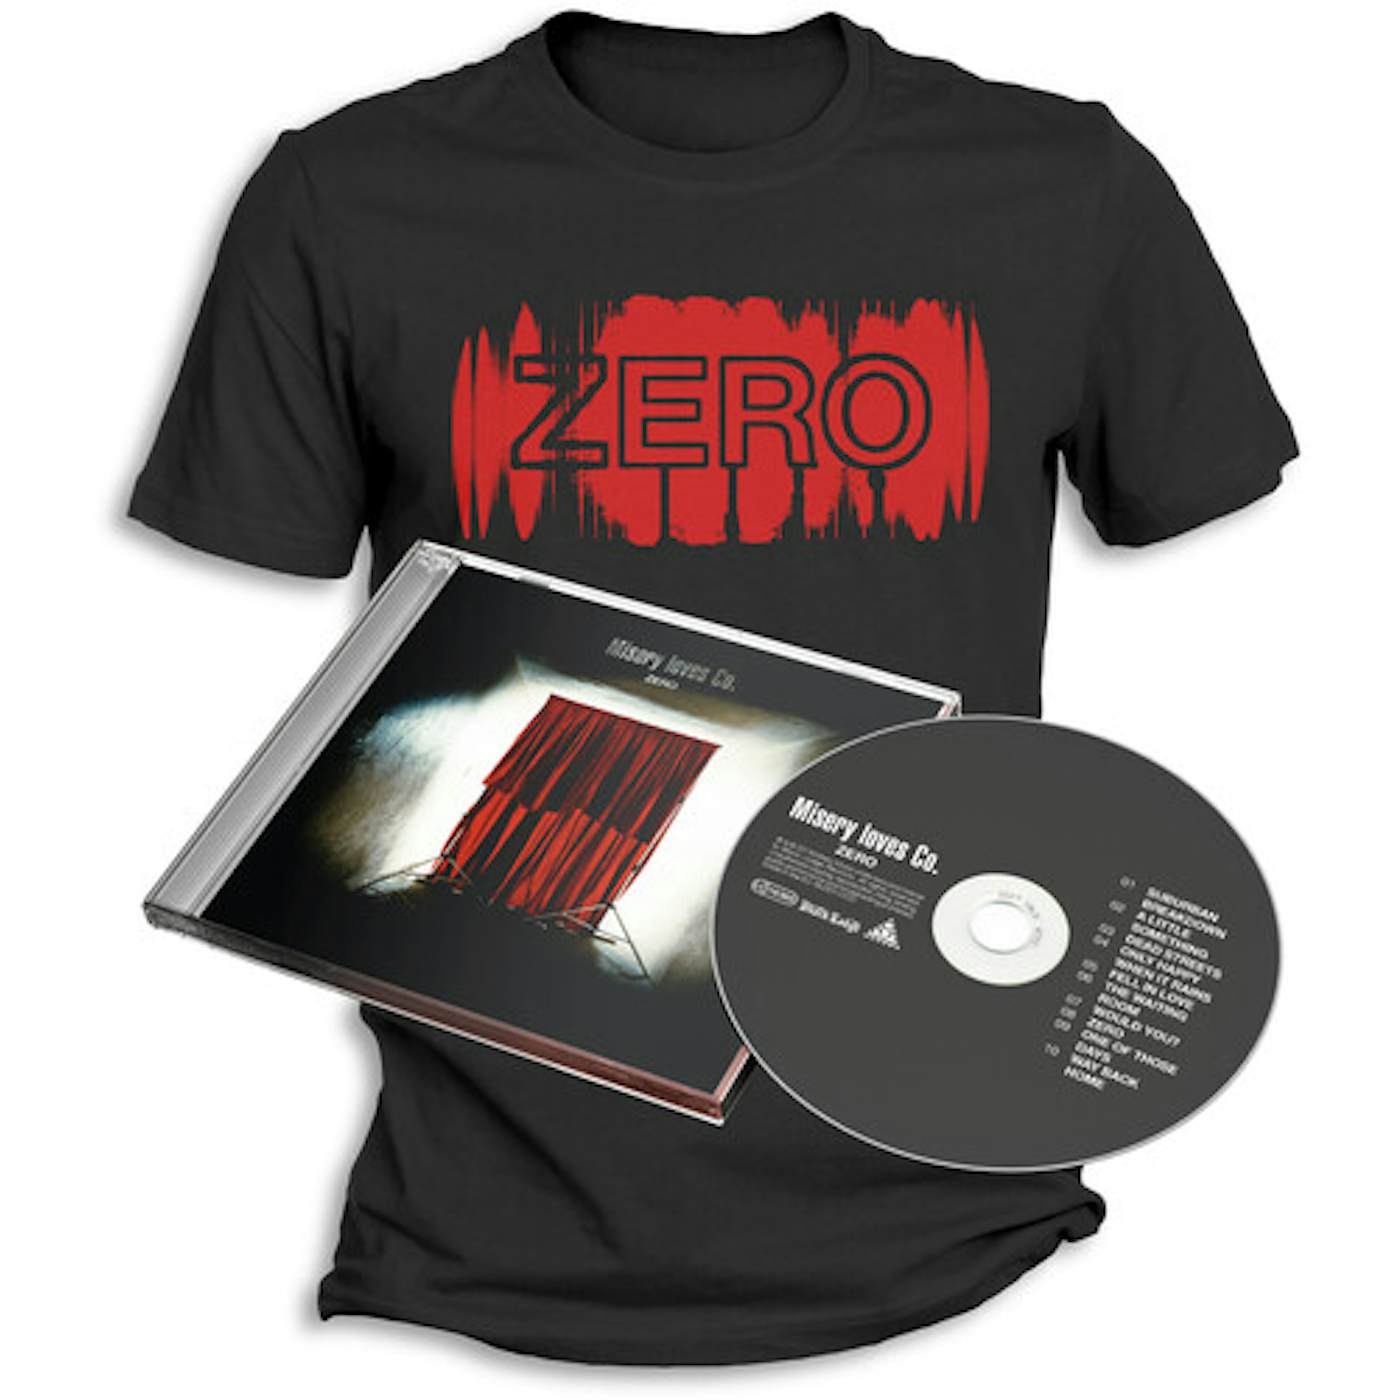 Misery Loves Co. ZERO + T-SHIRT (XXL) CD